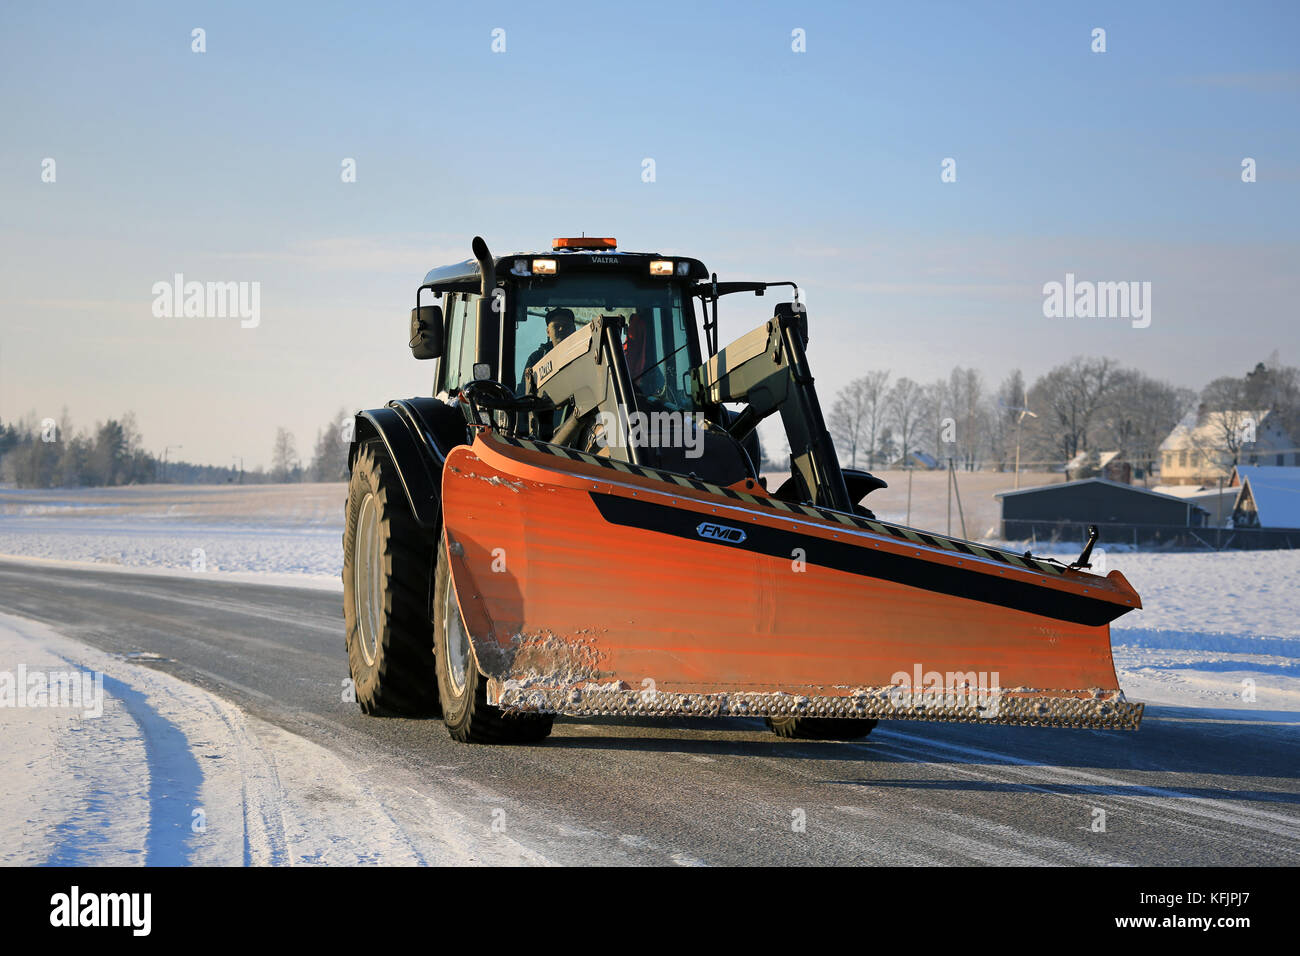 Salo, Finnland - Januar 16, 2016: Valtra Traktor und fm Schnee auf der Straße im Süden Finnlands Pflug. in Finnland, das Jahr 2016 beginnt mit kaltem Wetter Stockfoto